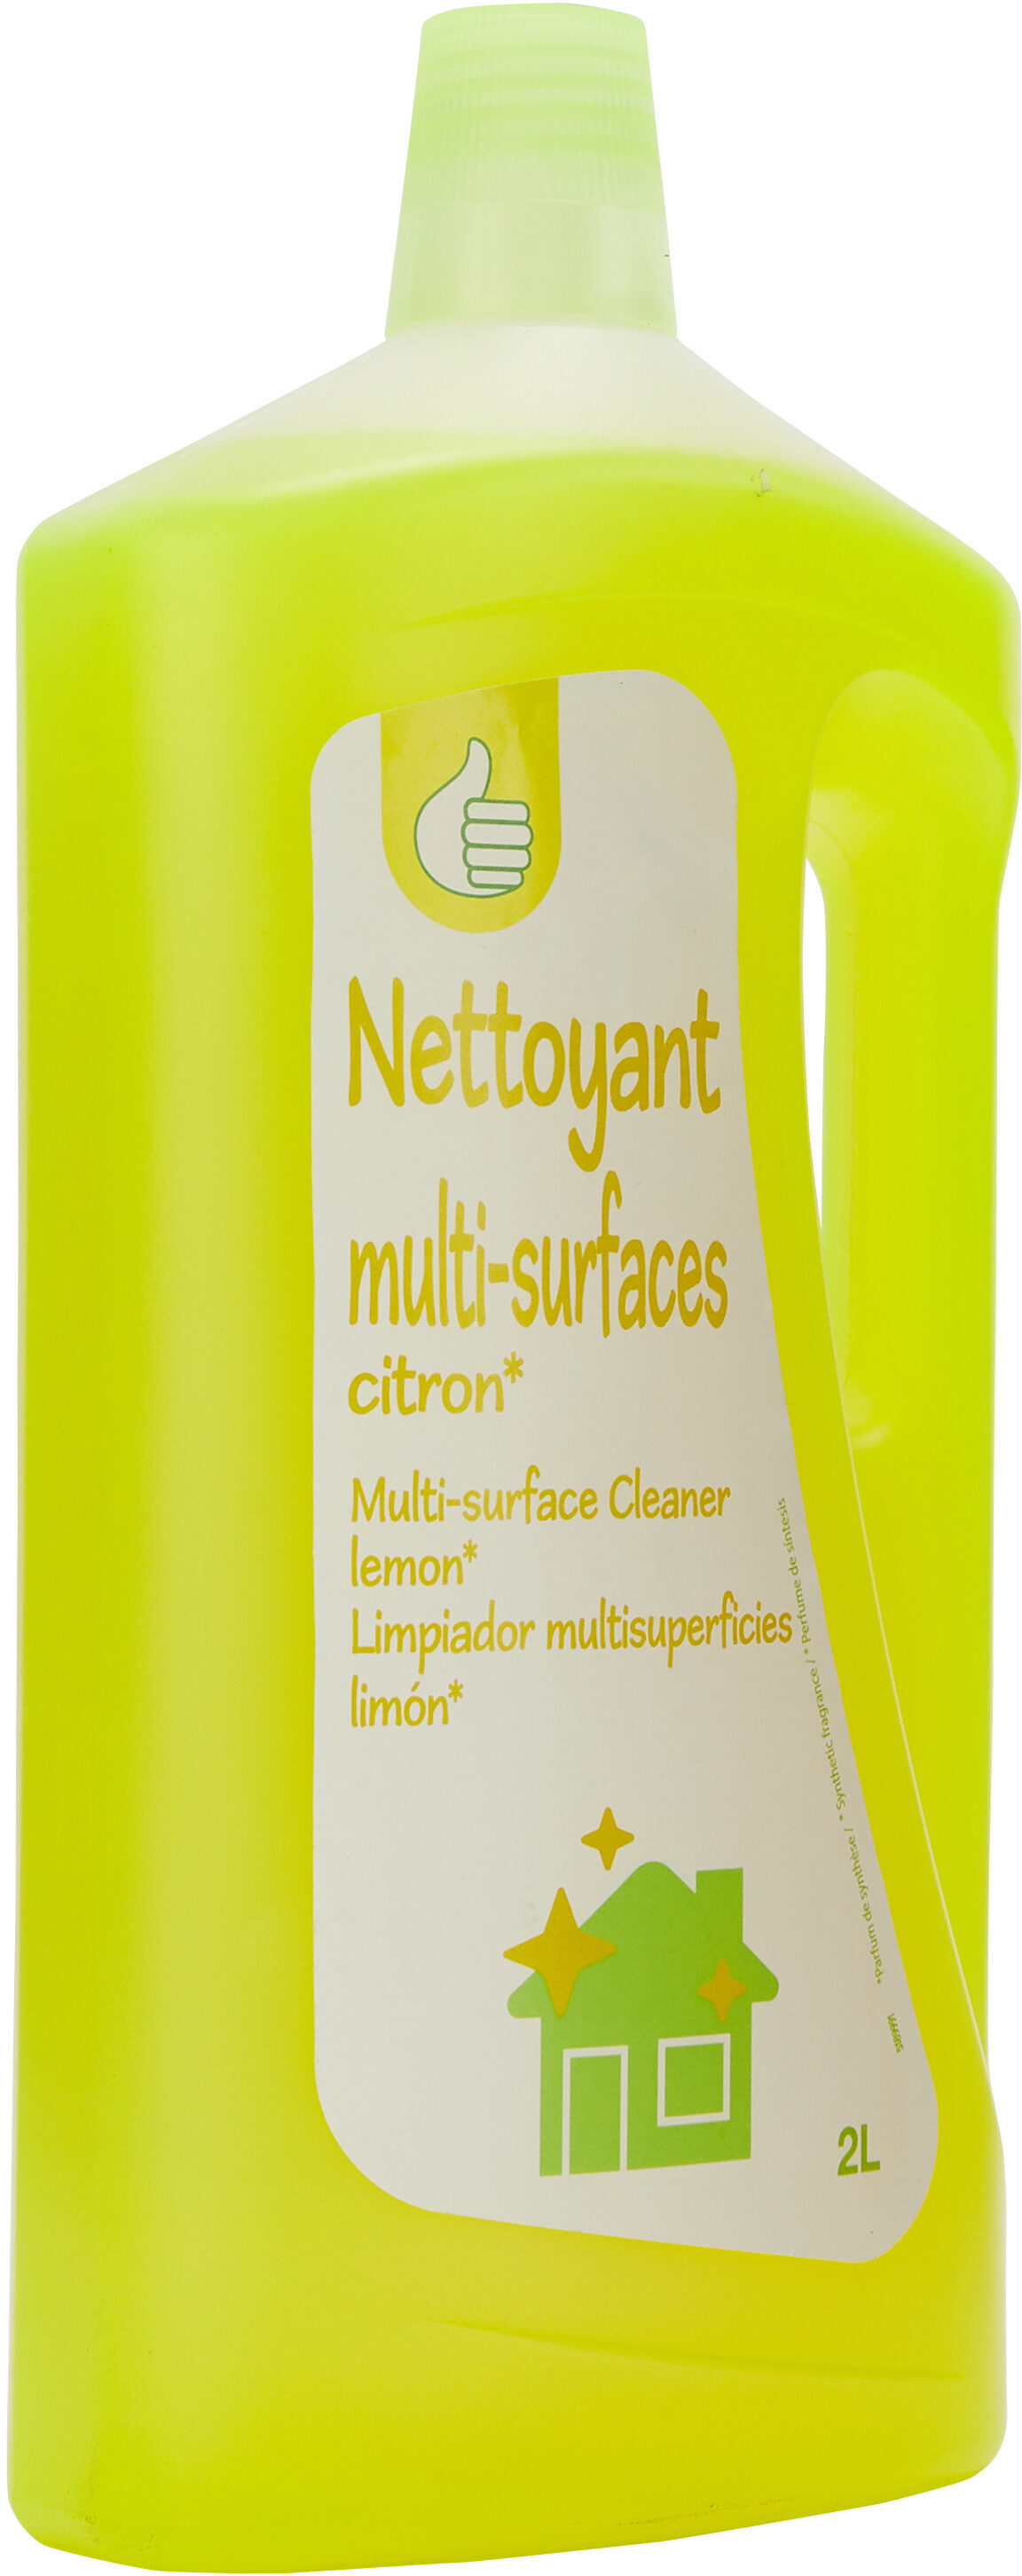 Pouce liquide multi-surfaces citron 2l - Produit - fr